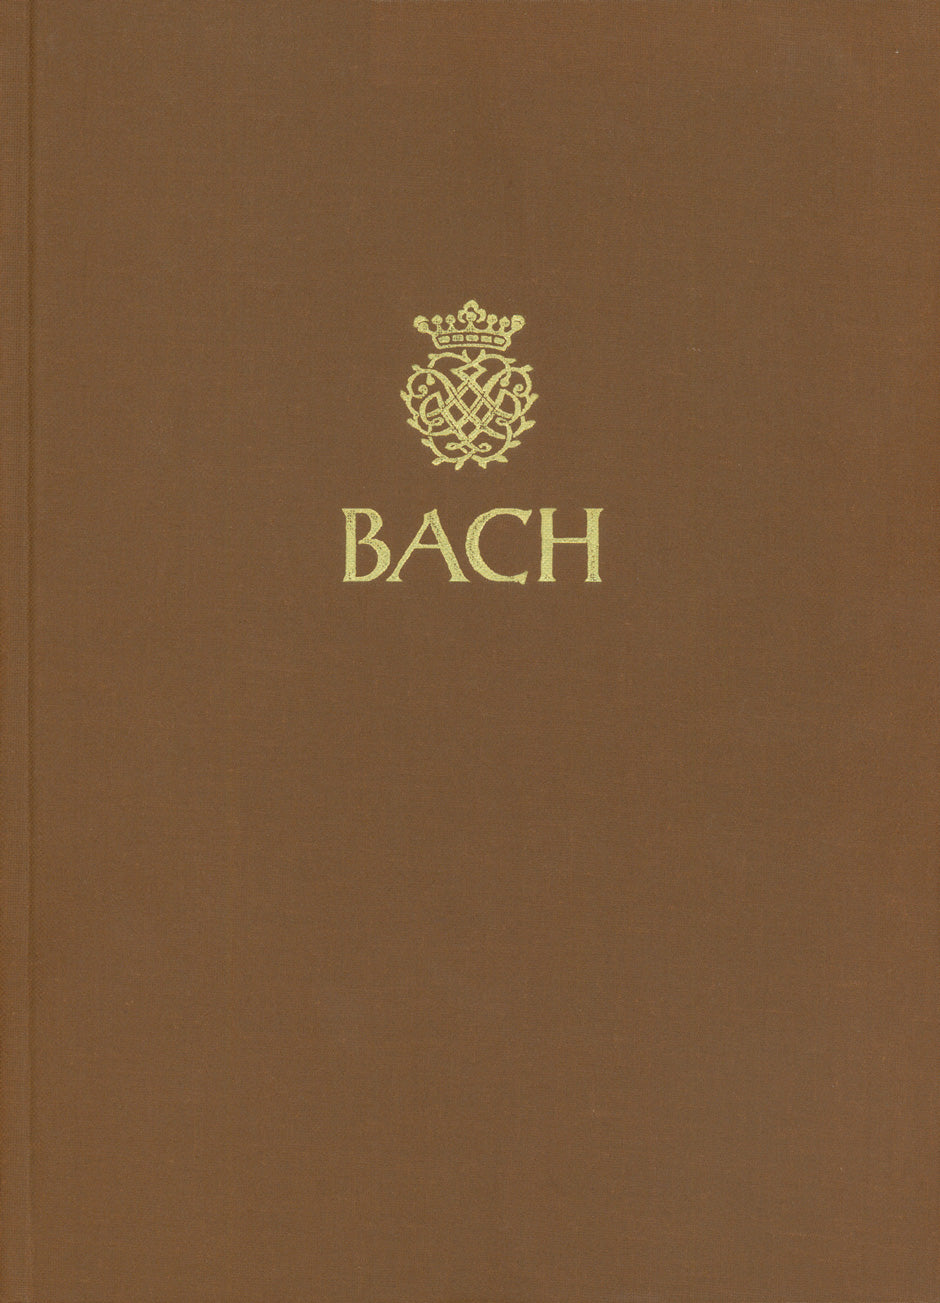 six Suiten für Violoncello solo BWV 1007-1012 -Kammermusikwerke, Band 2- (Textband und facsimileband)